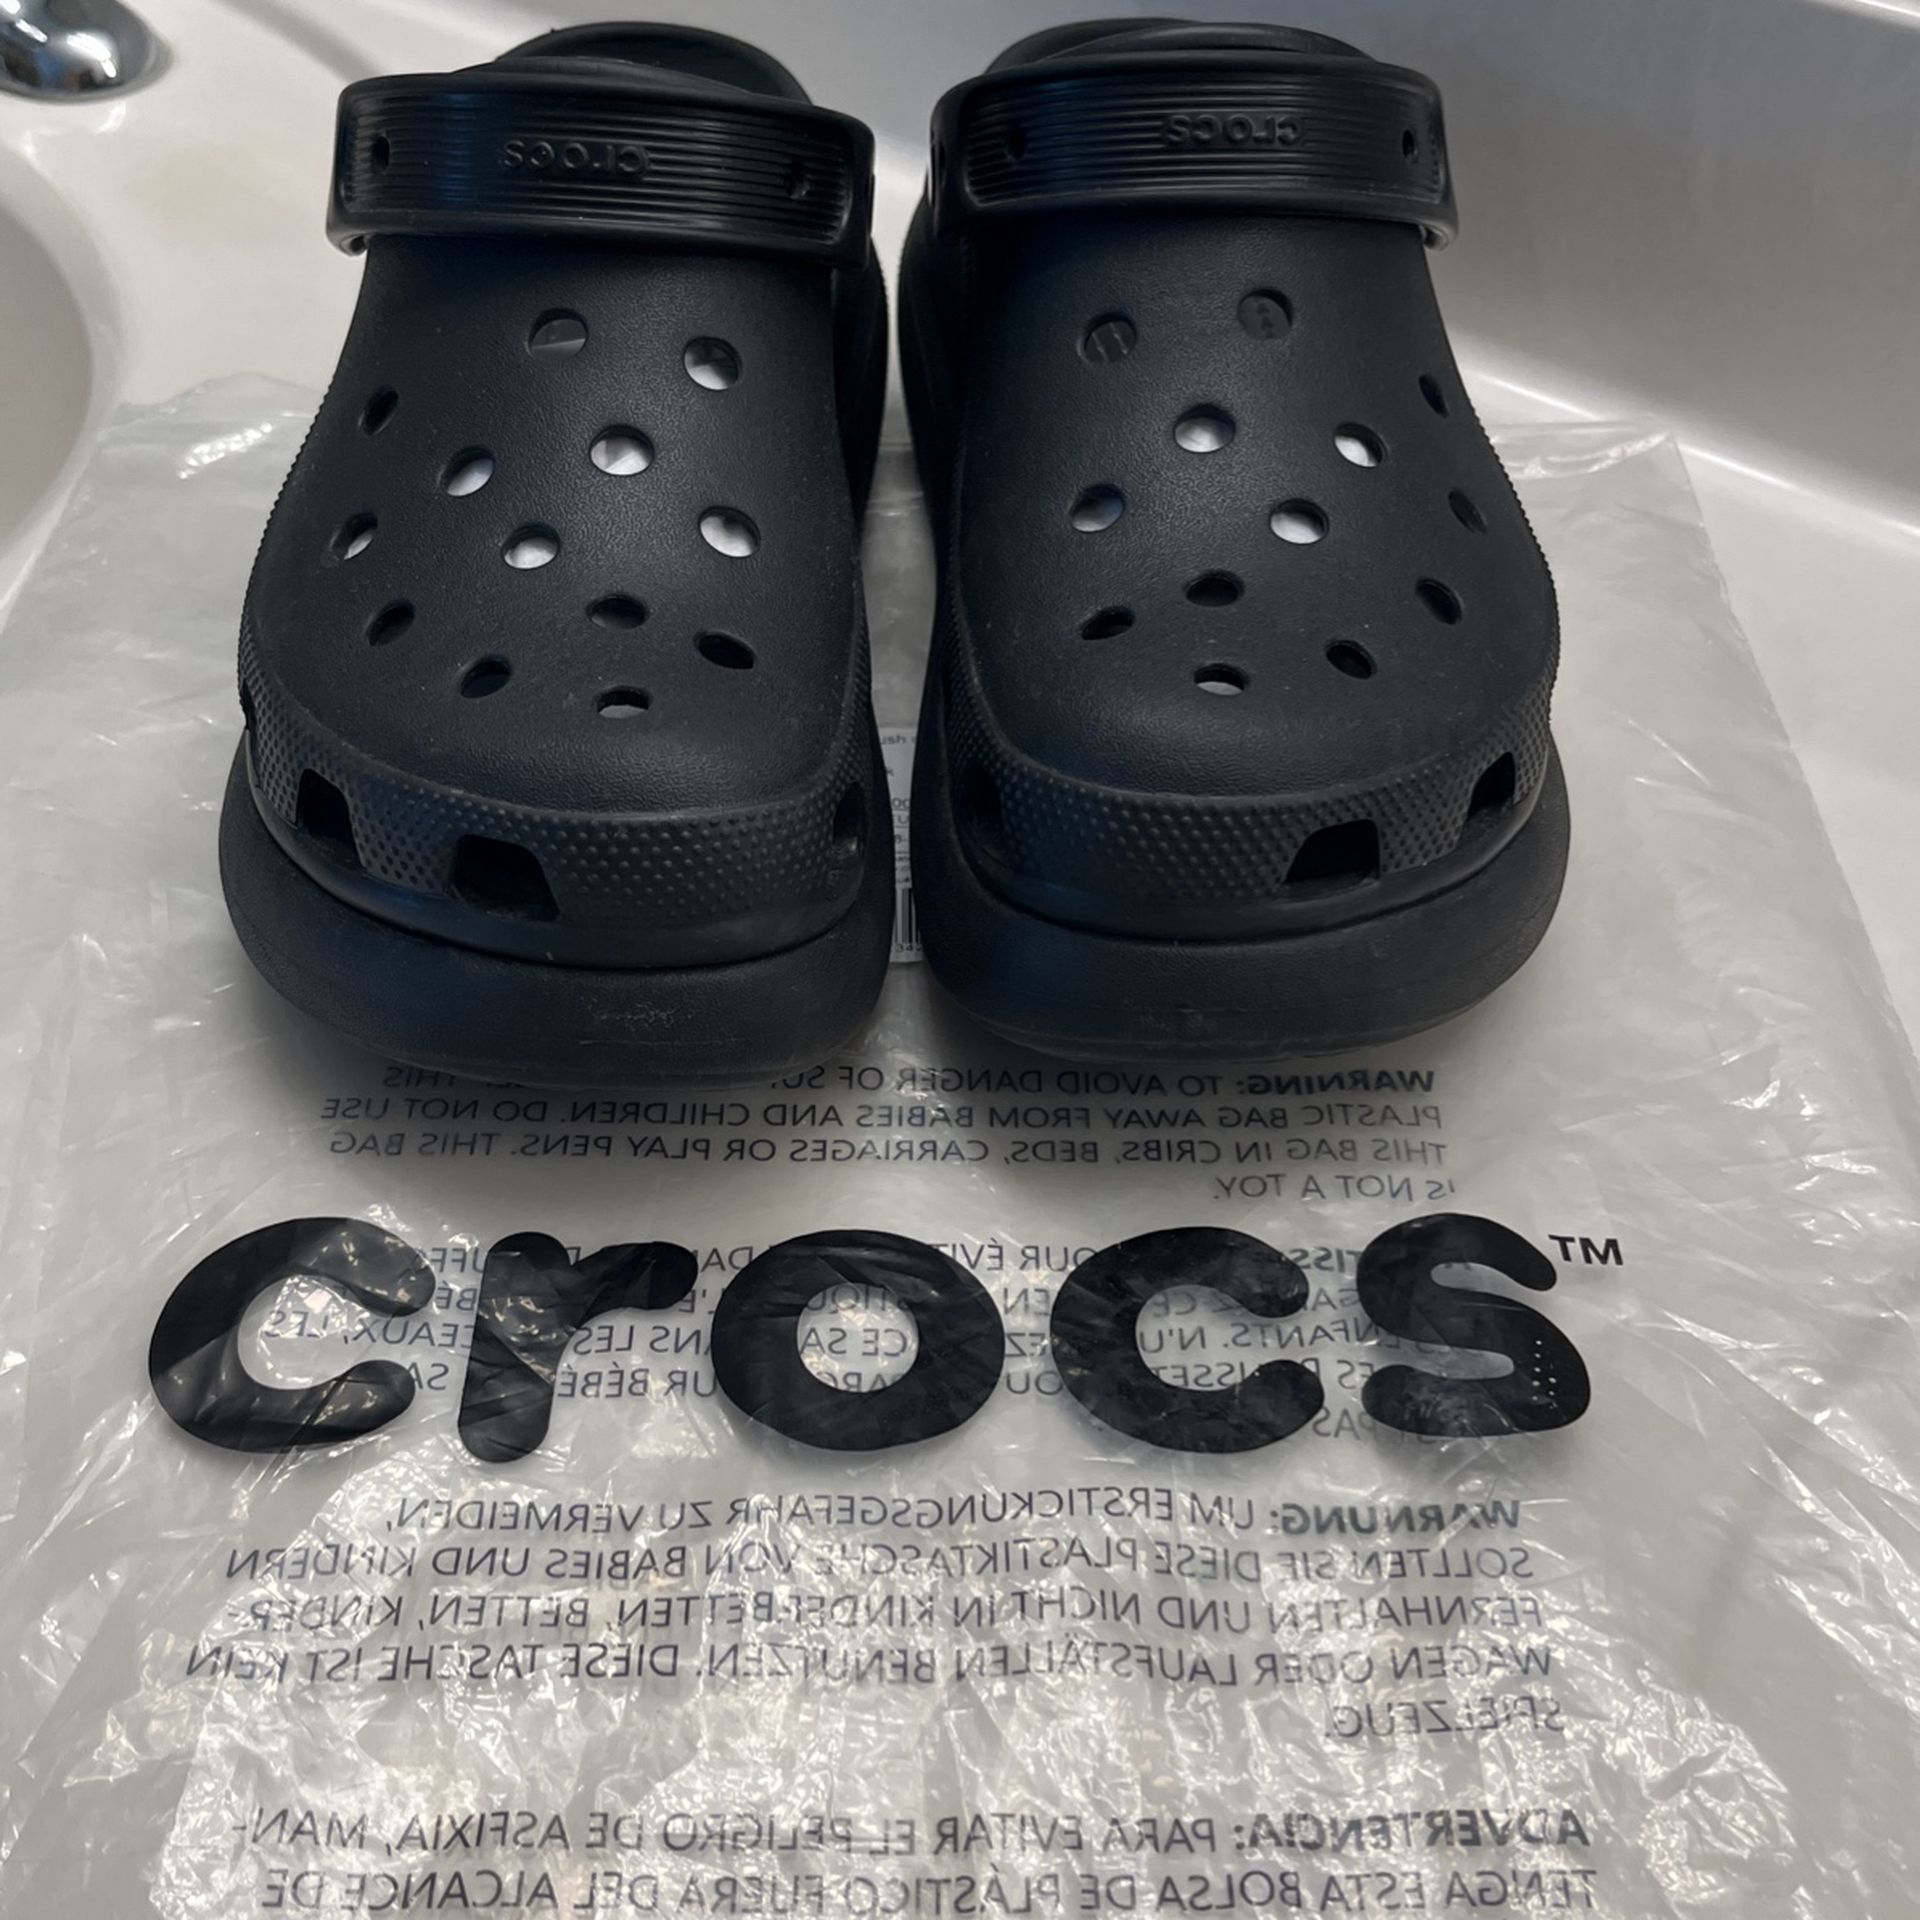 Raised Heel Crocs